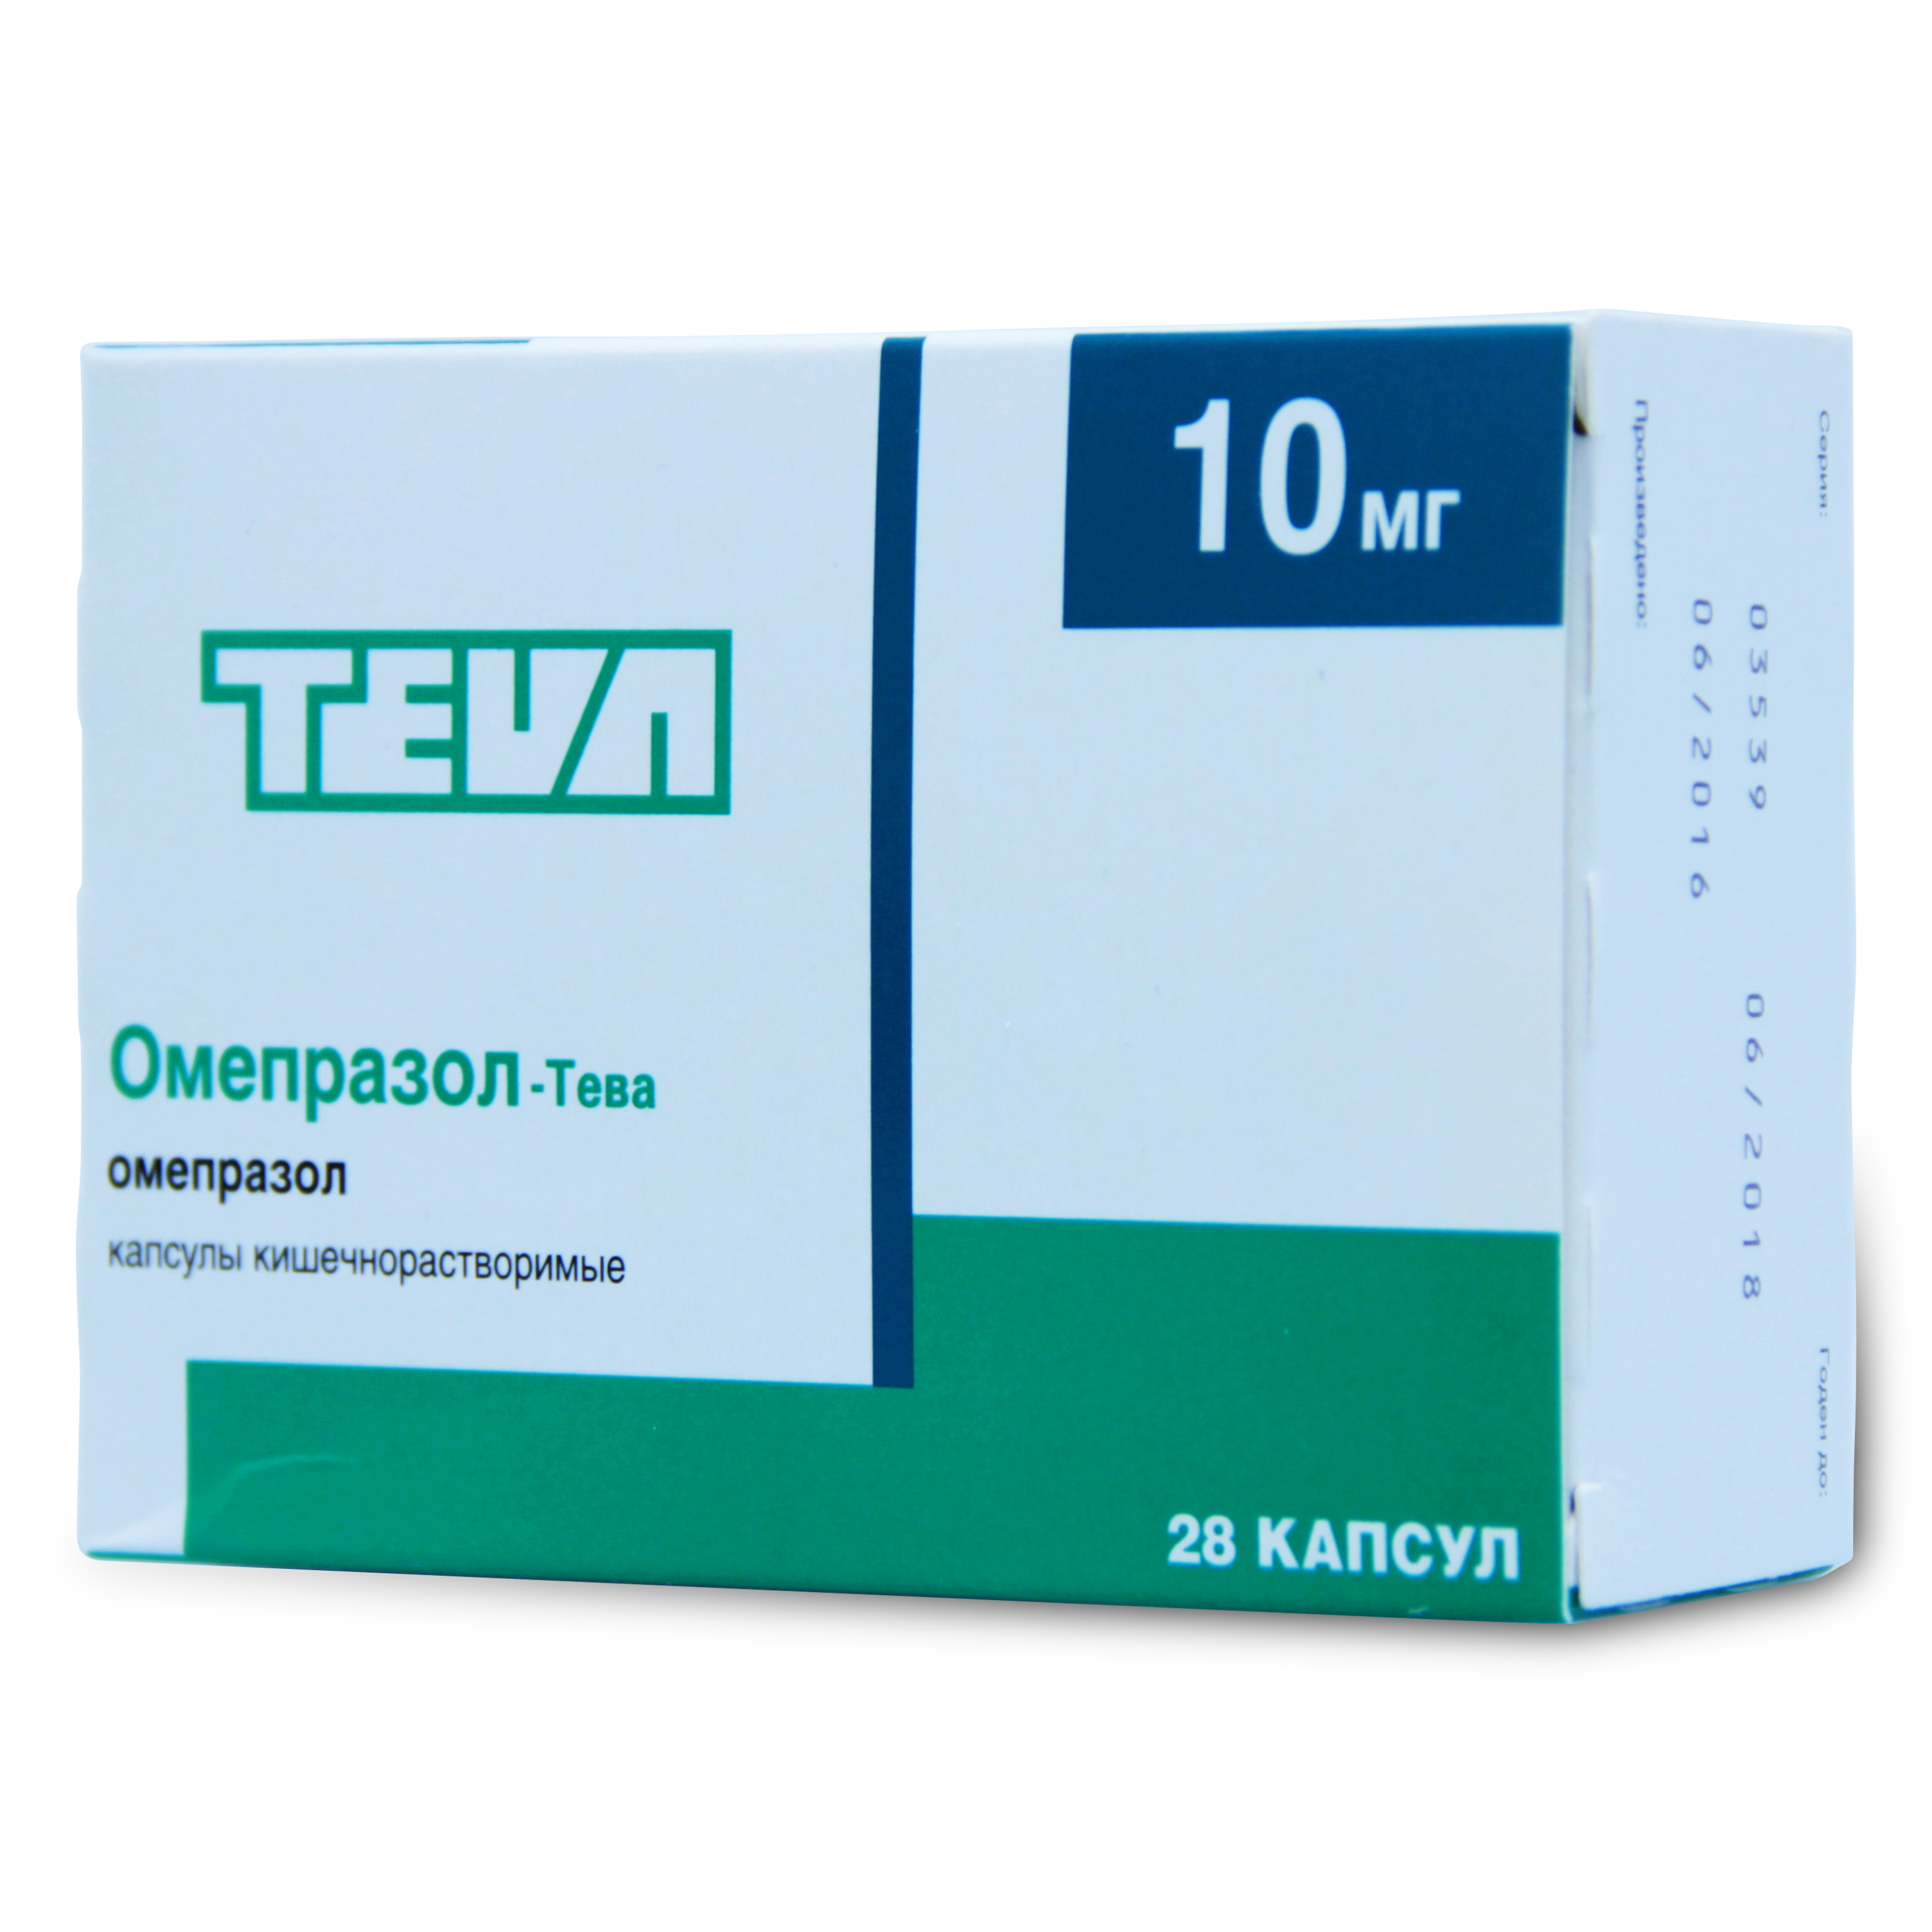 Омепразол-Тева капсулы кишечнорастворимые 10 мг 28 шт.